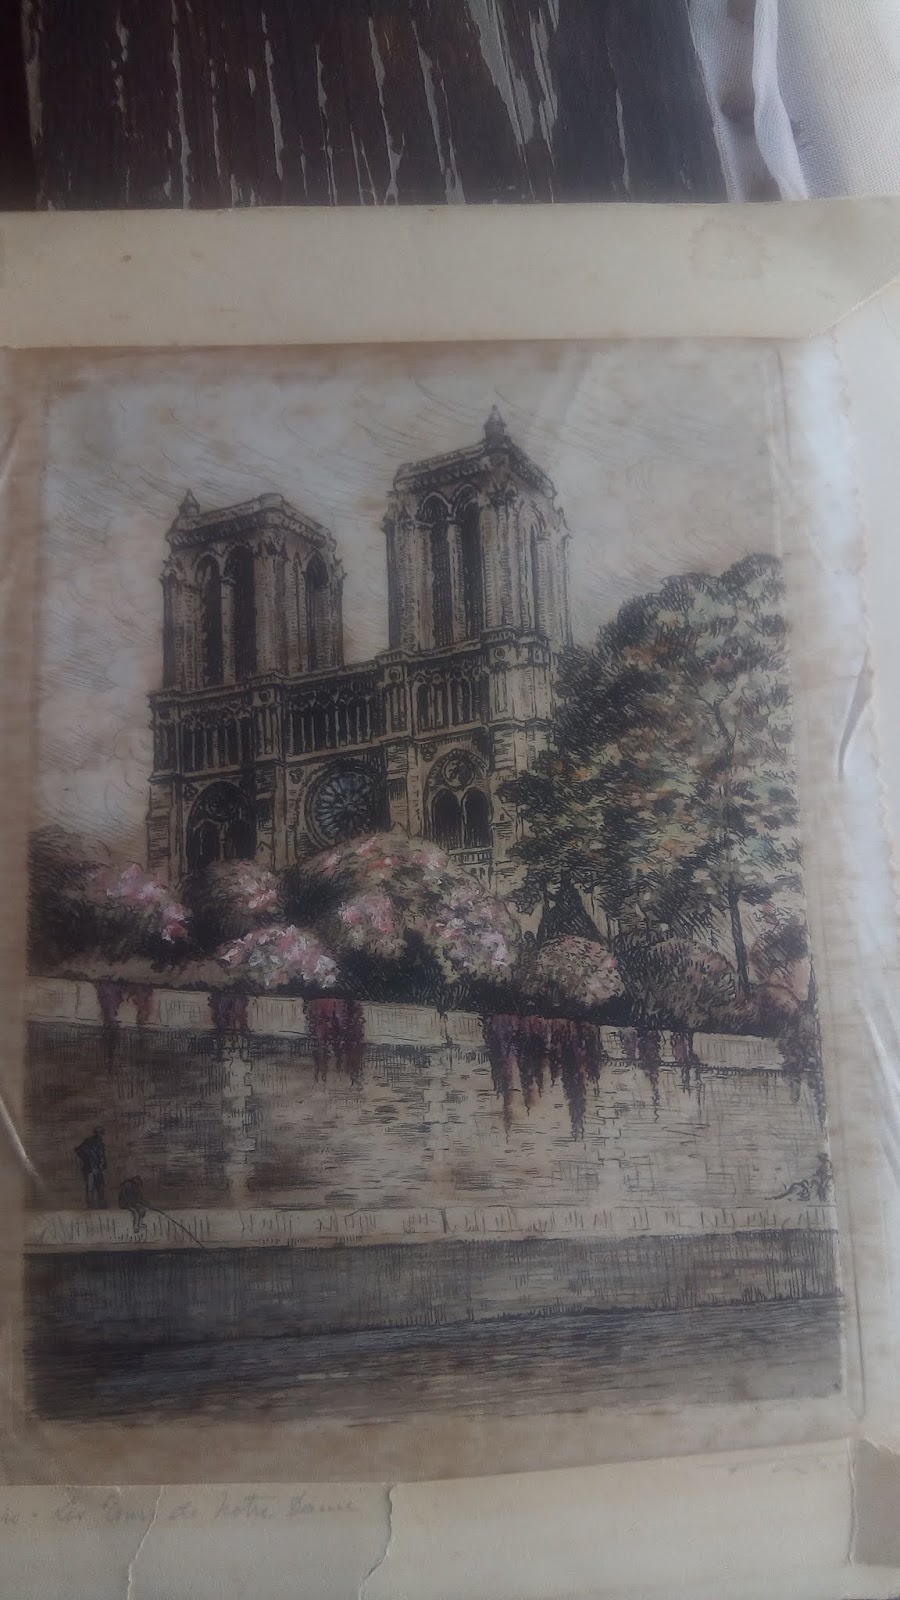 لوحة فنية قديمة فرنسية لـ"كاتدرائية نوتردام دو باري" IMG_20190113_135215